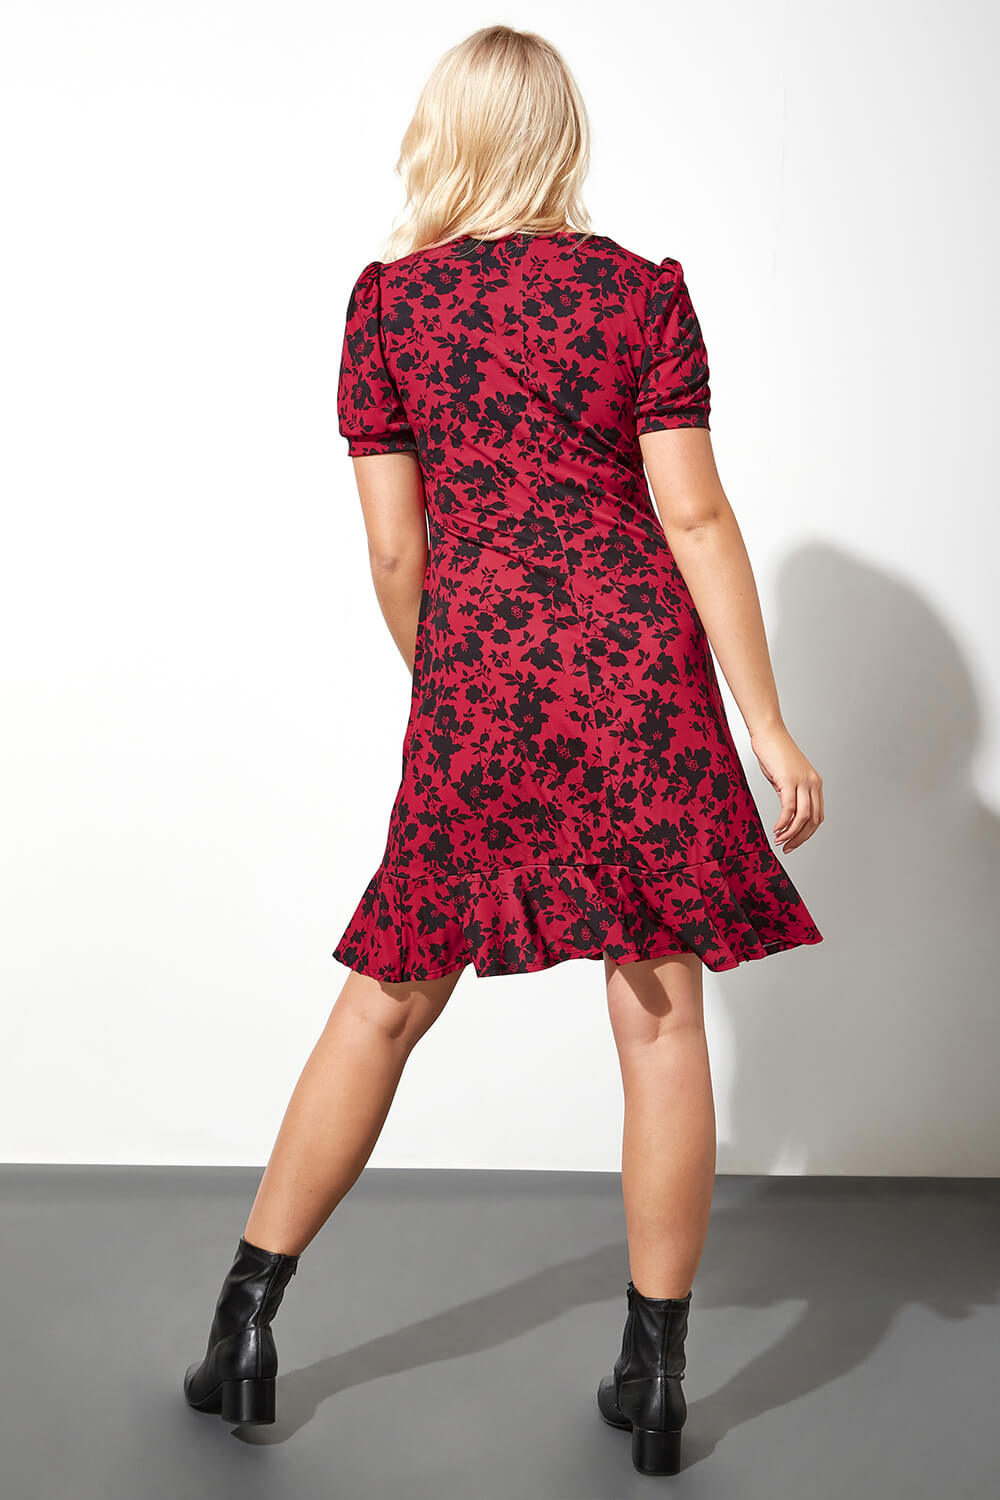 Red Floral Print Ruched V-Neck Skater Dress, Image 3 of 4